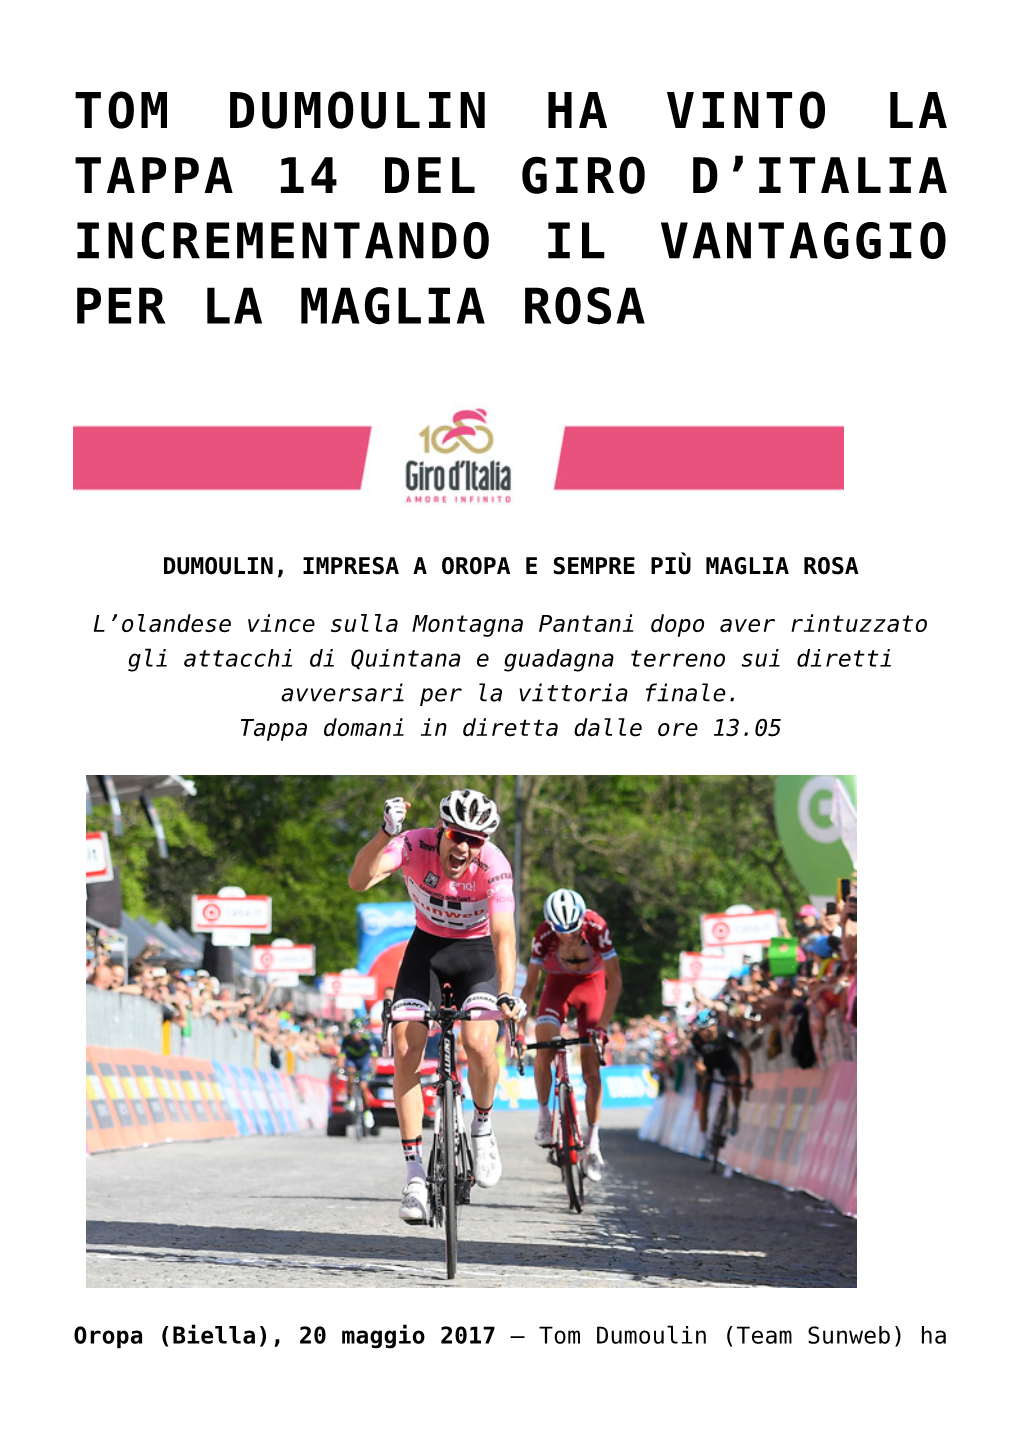 Tom Dumoulin Ha Vinto La Tappa 14 Del Giro D'italia Incrementando Il Vantaggio Per La Maglia Rosa